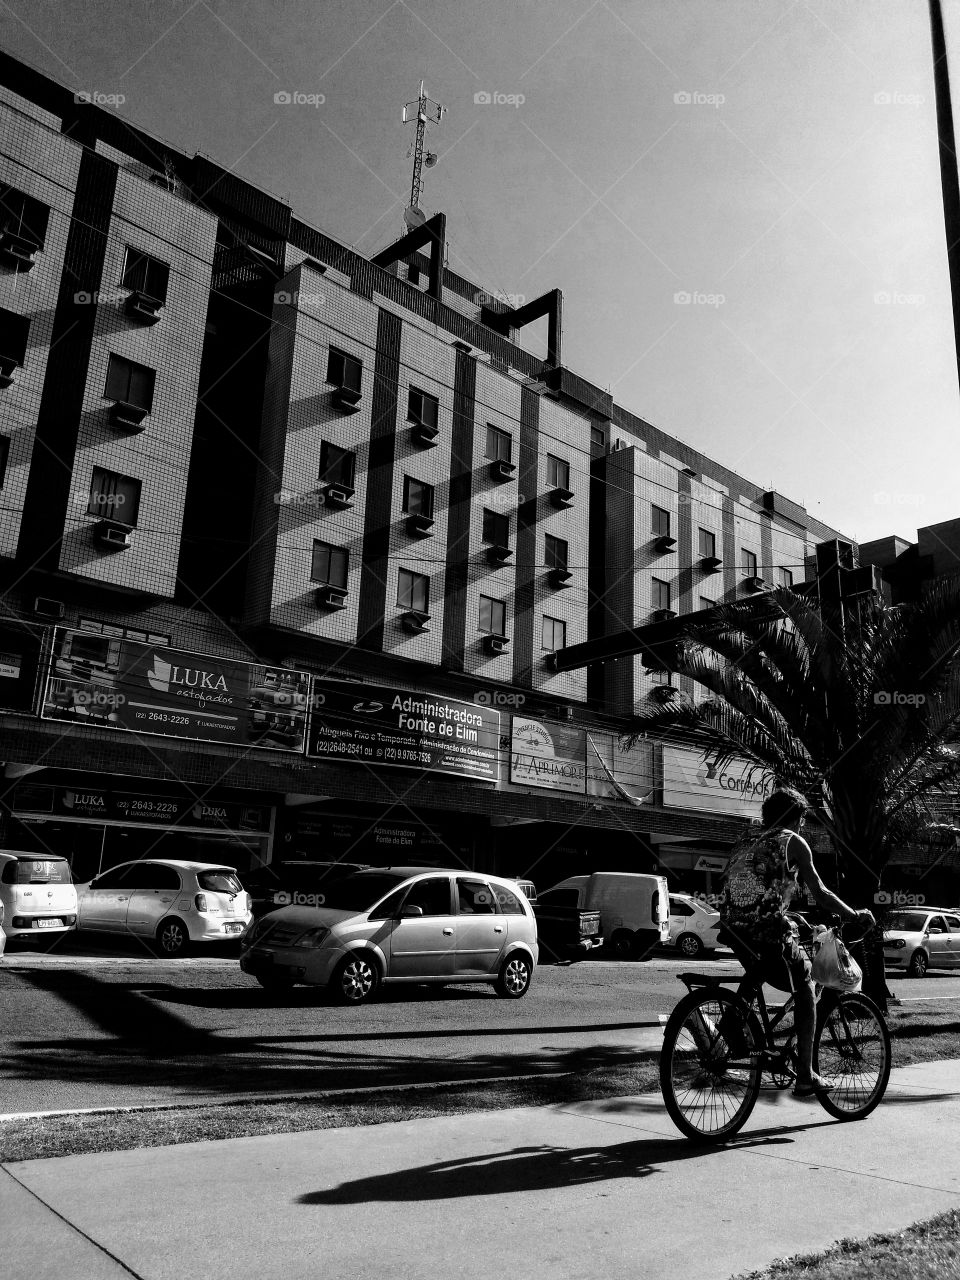 mundo moderno em preto e branco. Homem montado em bicicleta e carros ao fundo.